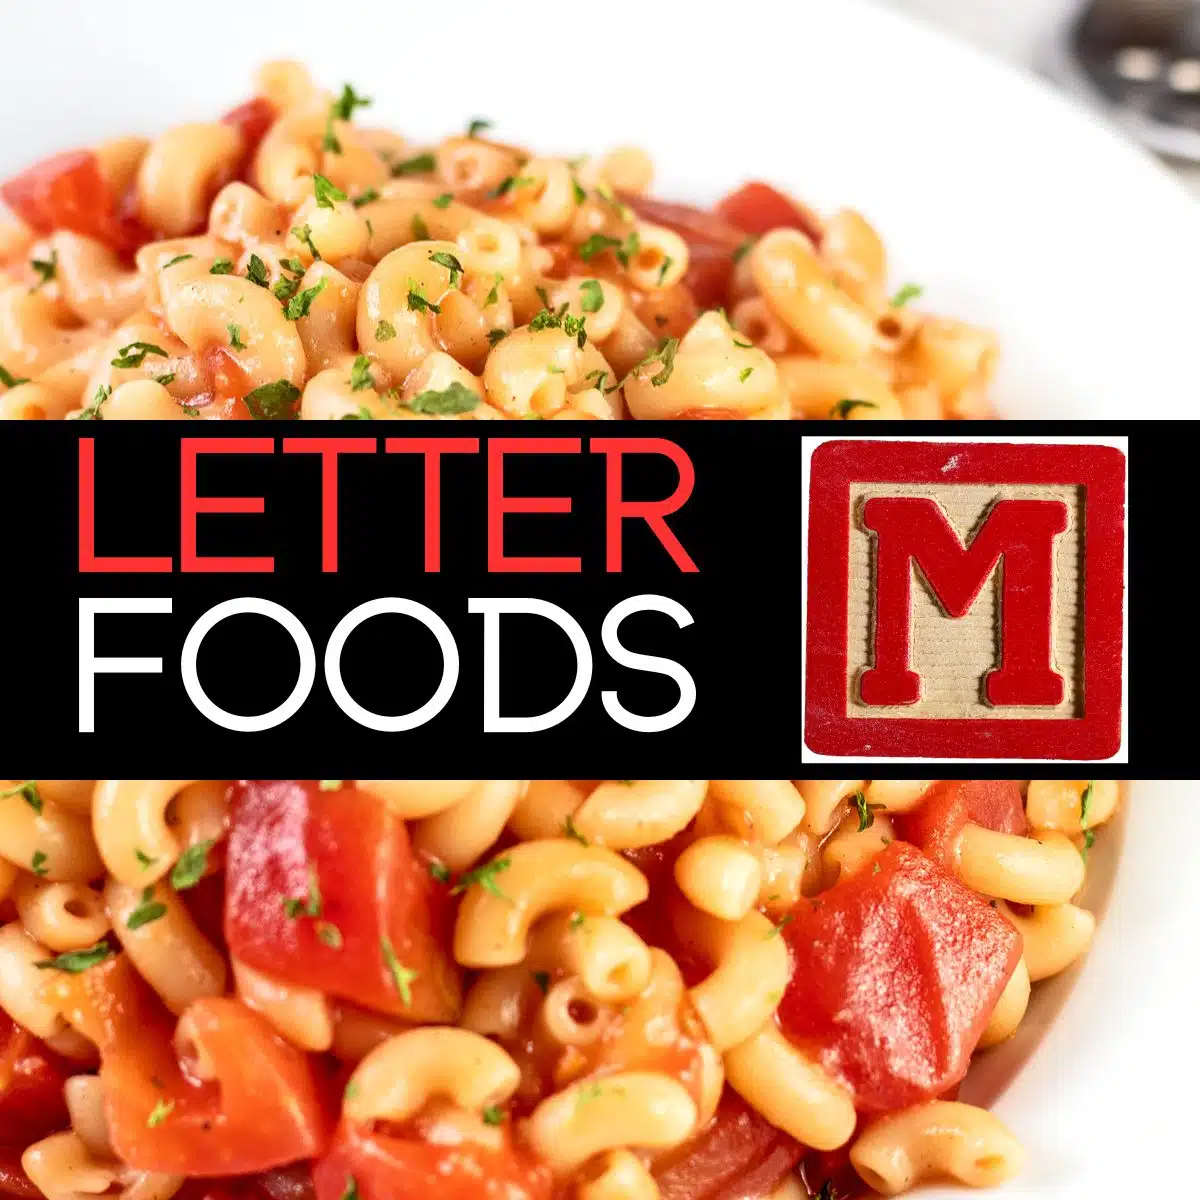 Imagen cuadrada de alimentos que comienzan con la letra M, que muestra macarrones.